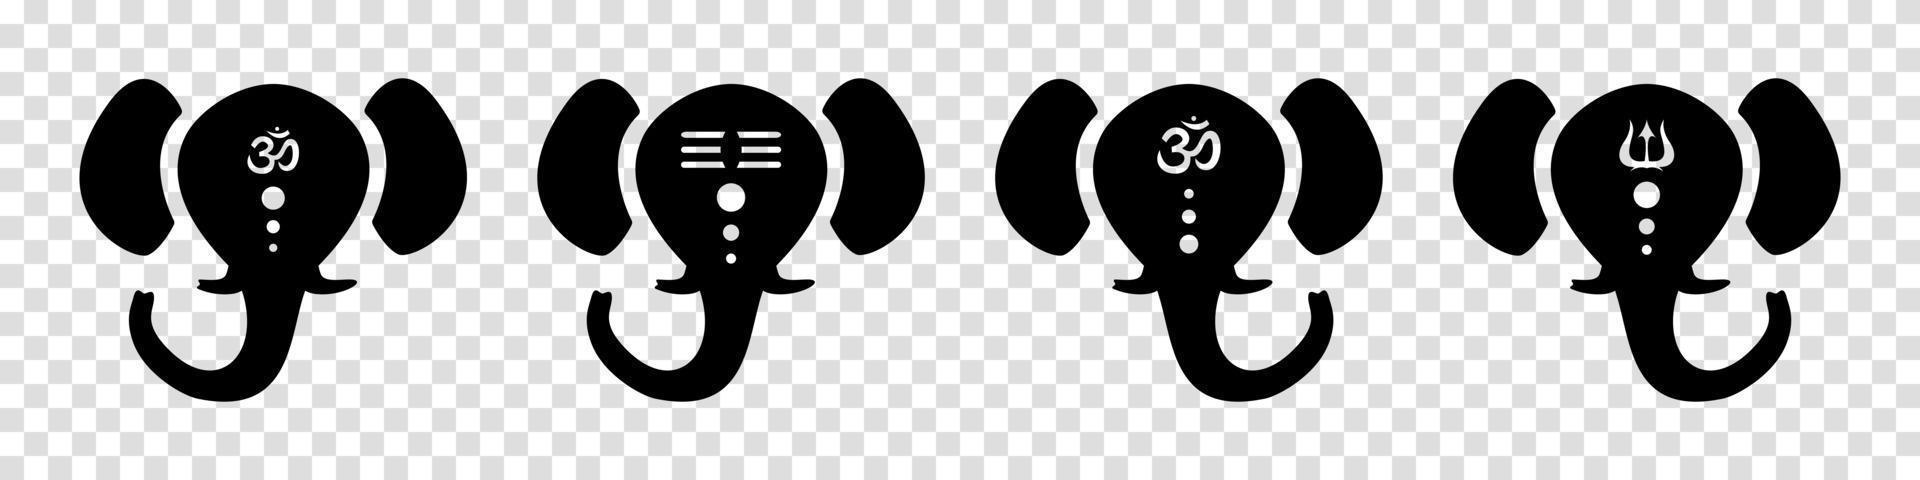 abstrakta ganesh huvuden med symboler. hinduisk svart gud med elefanthuvudet god son shiva skyddshelgon för rikedom och välstånd skapare andlig vektor harmoni